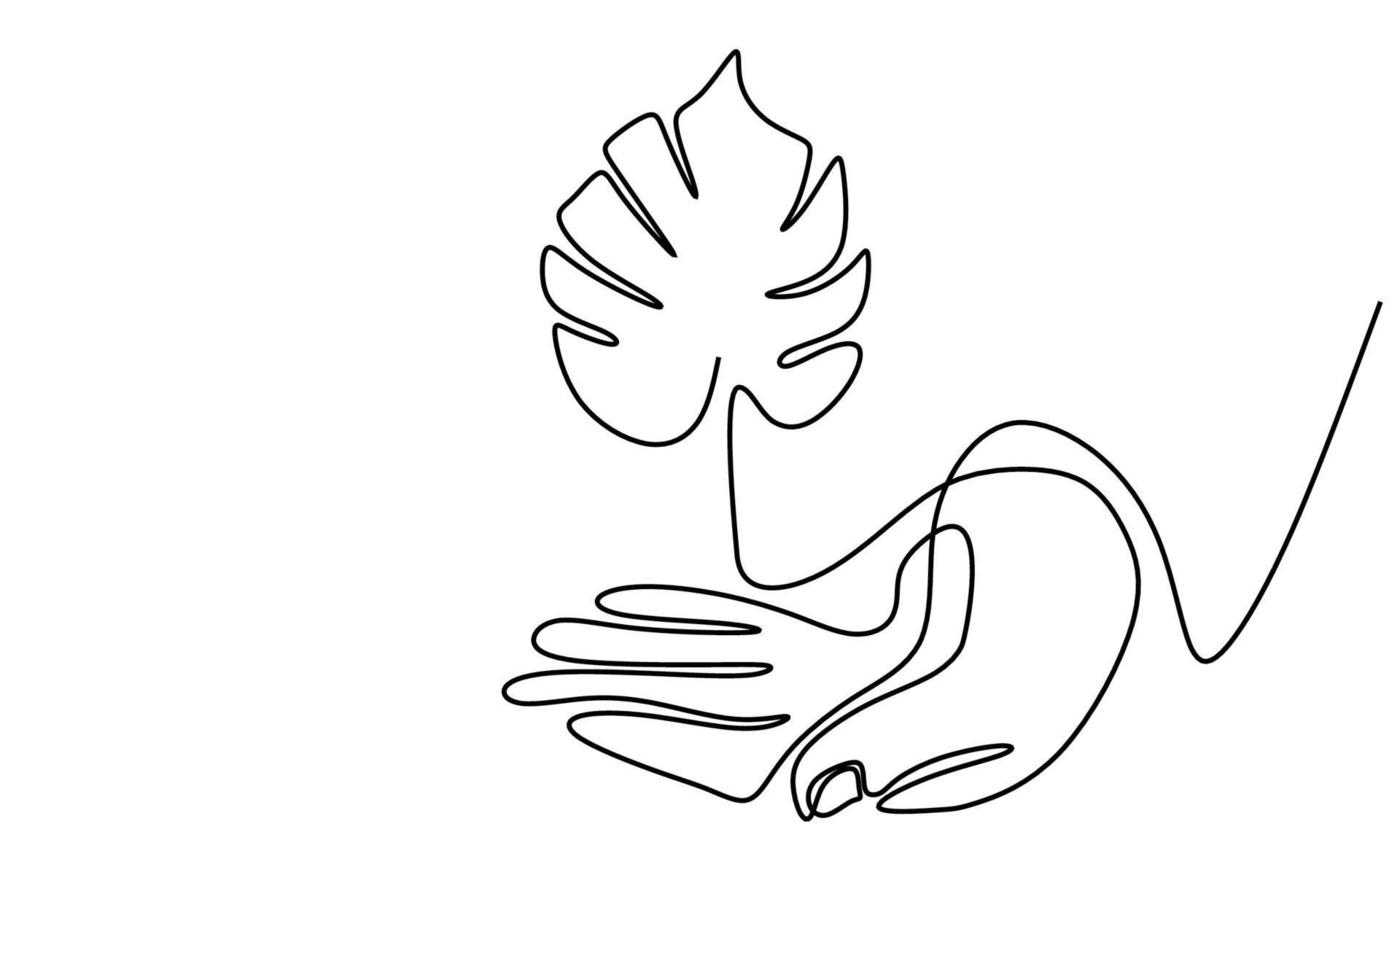 un disegno a tratteggio della pianta in mano isolato su sfondo bianco. arte vettoriale linea singola giornata della terra ambiente. concetto di crescita e amore per la terra. illustrazione disegnata a mano. design minimalista